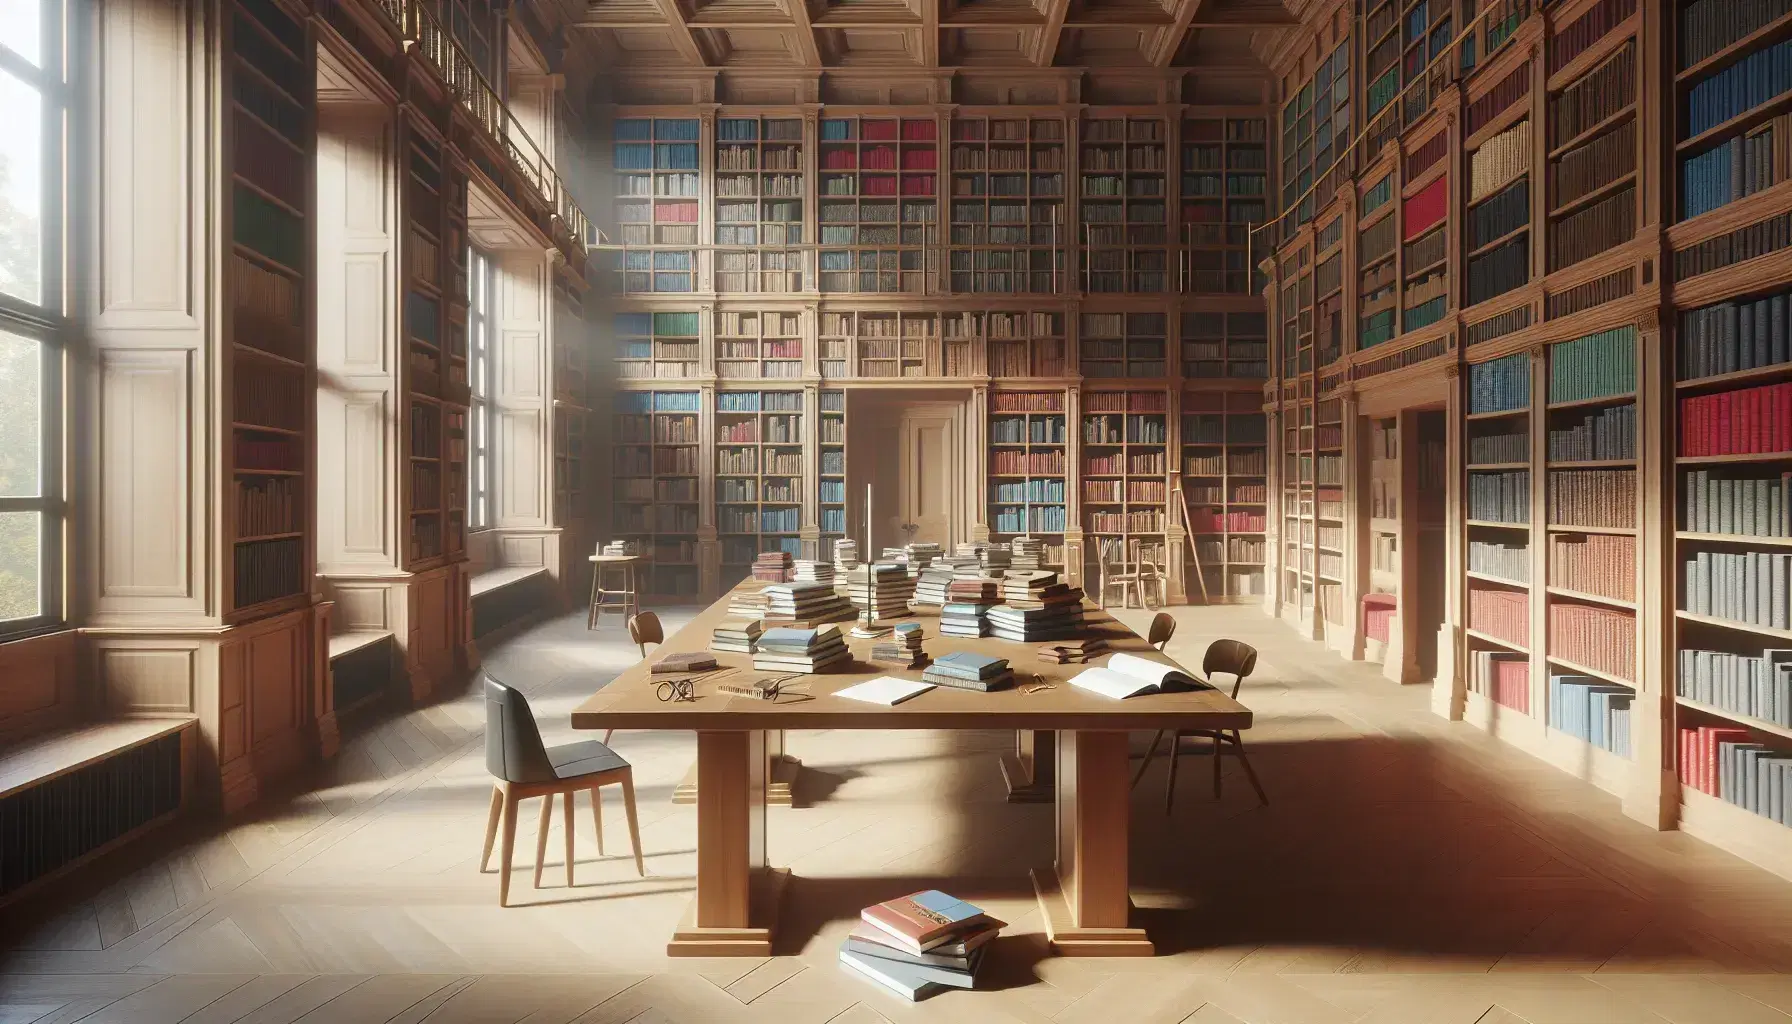 Biblioteca espaciosa con estanterías de madera llenas de libros, mesa central con libros abiertos, lupa y regla, y silla con cojín rojo bajo luz natural.